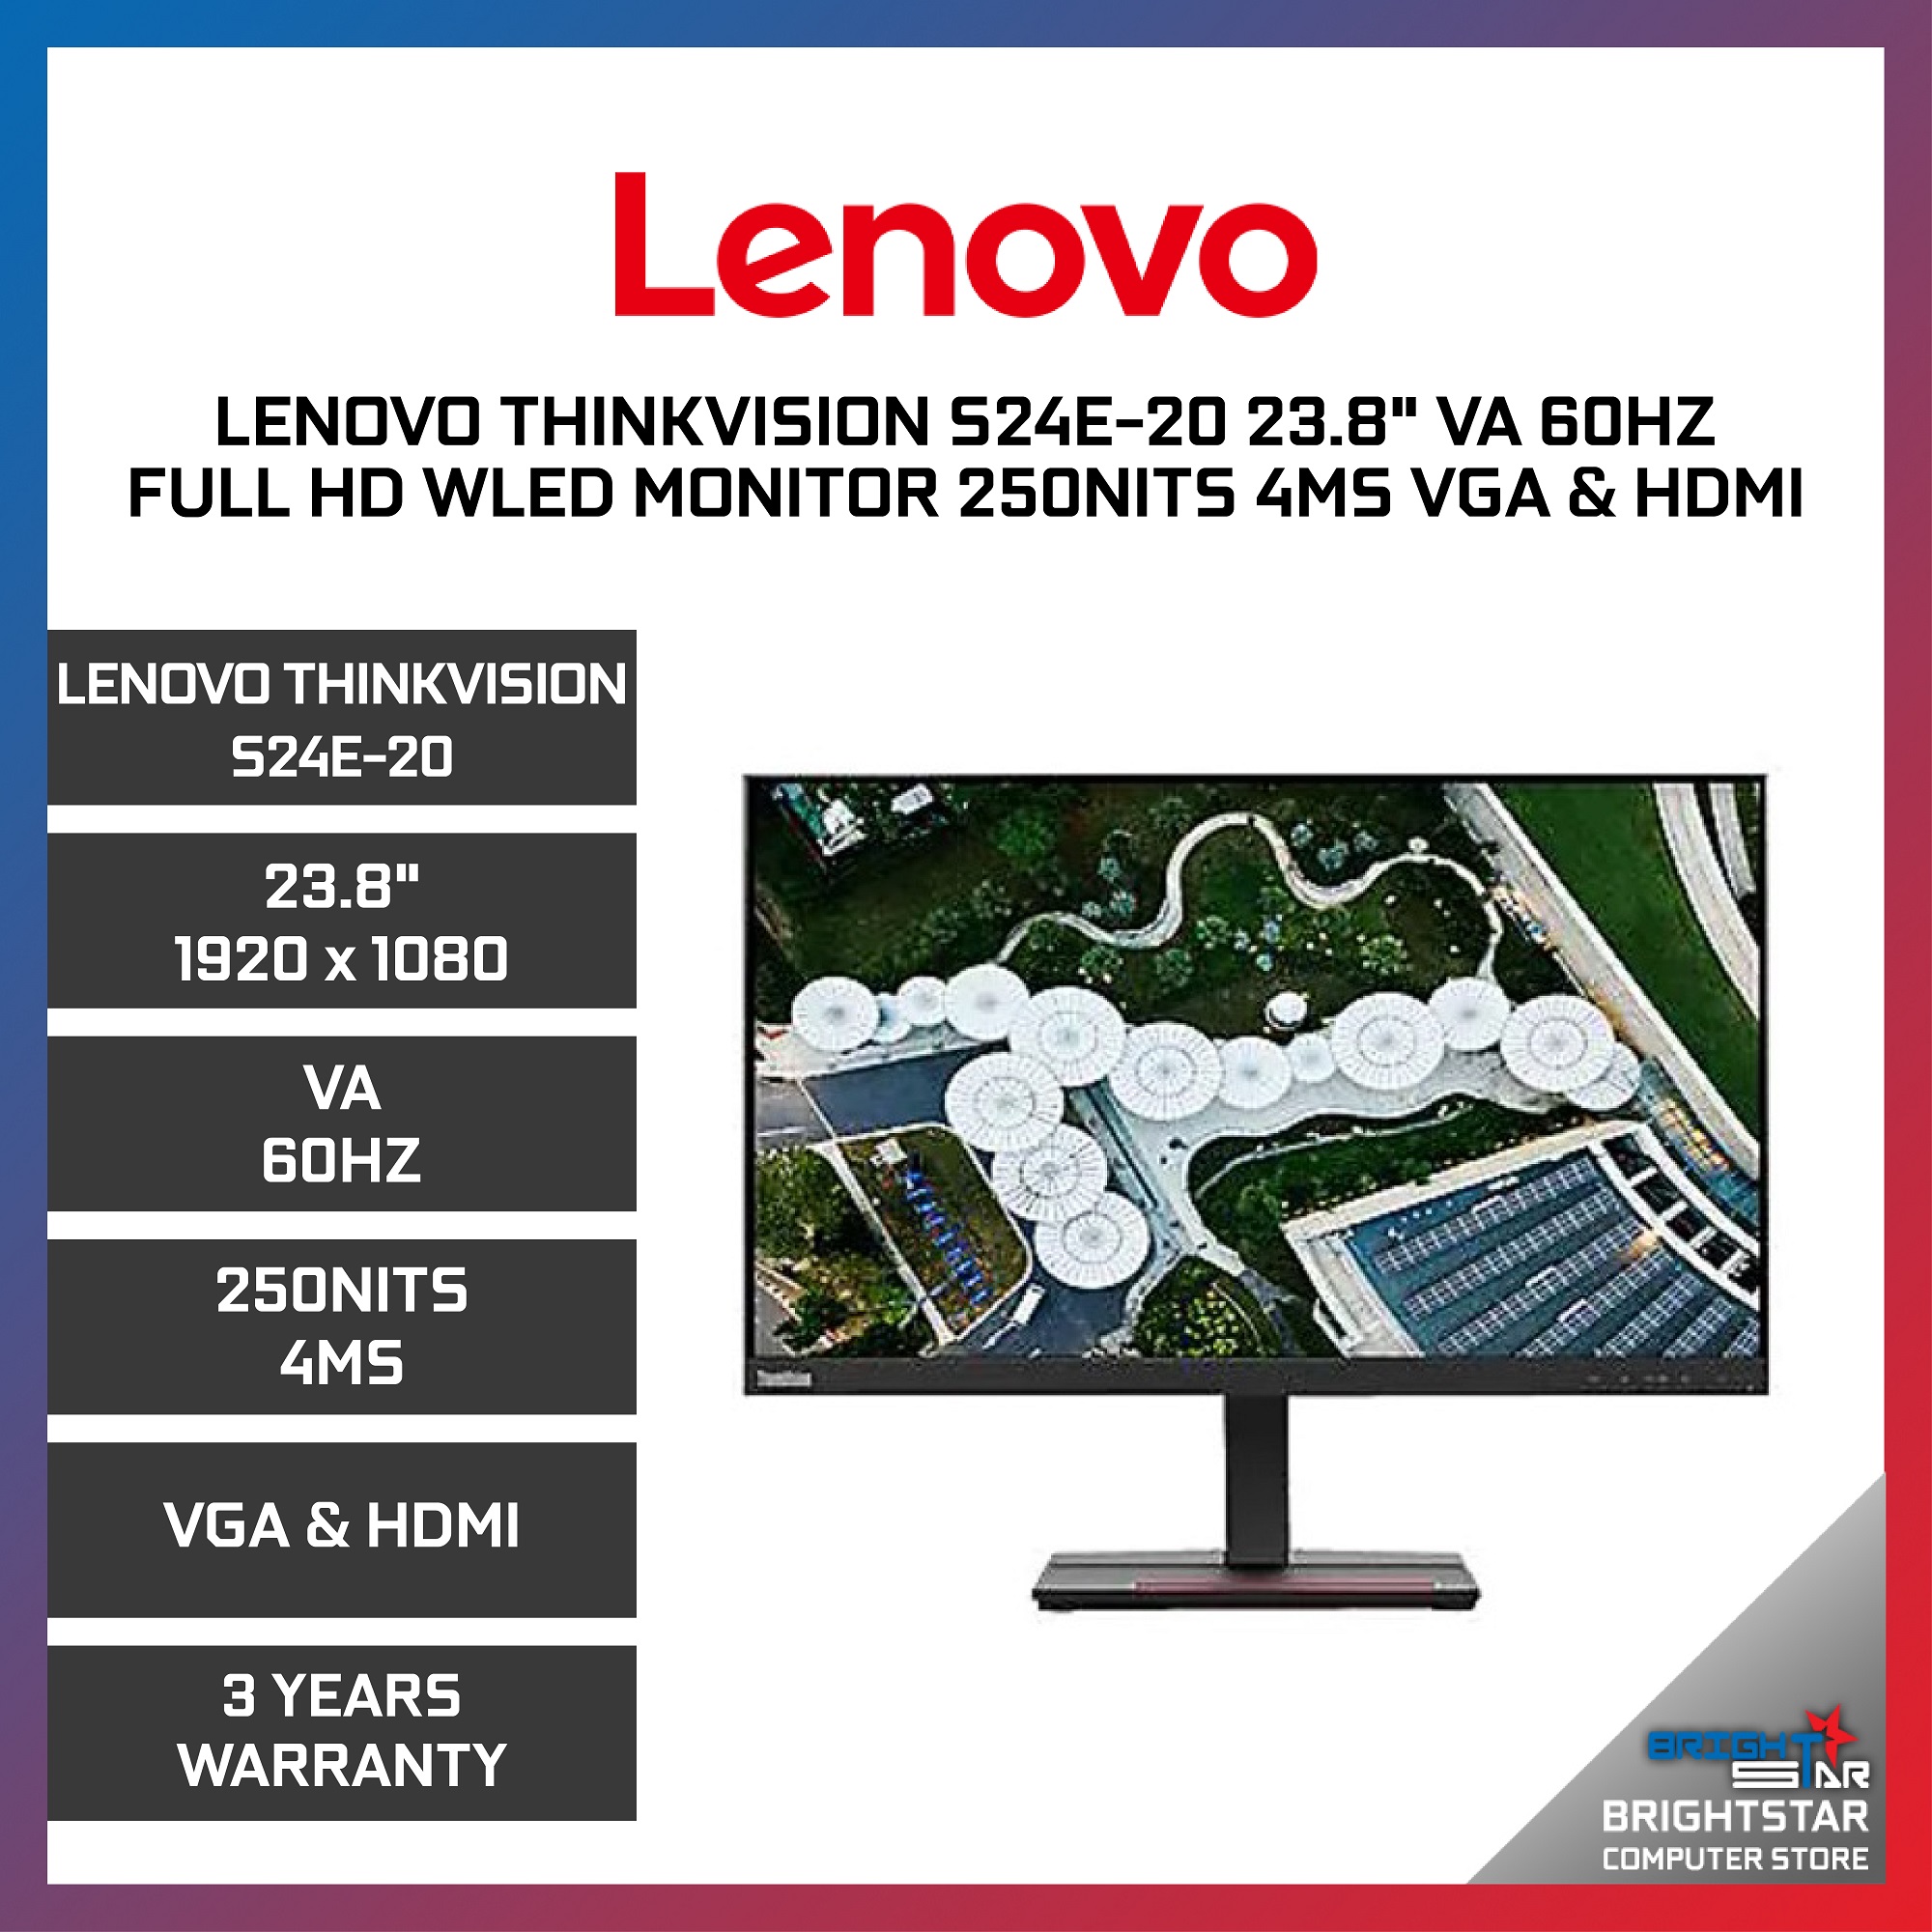 Lenovo Thinkvision S24E-20 